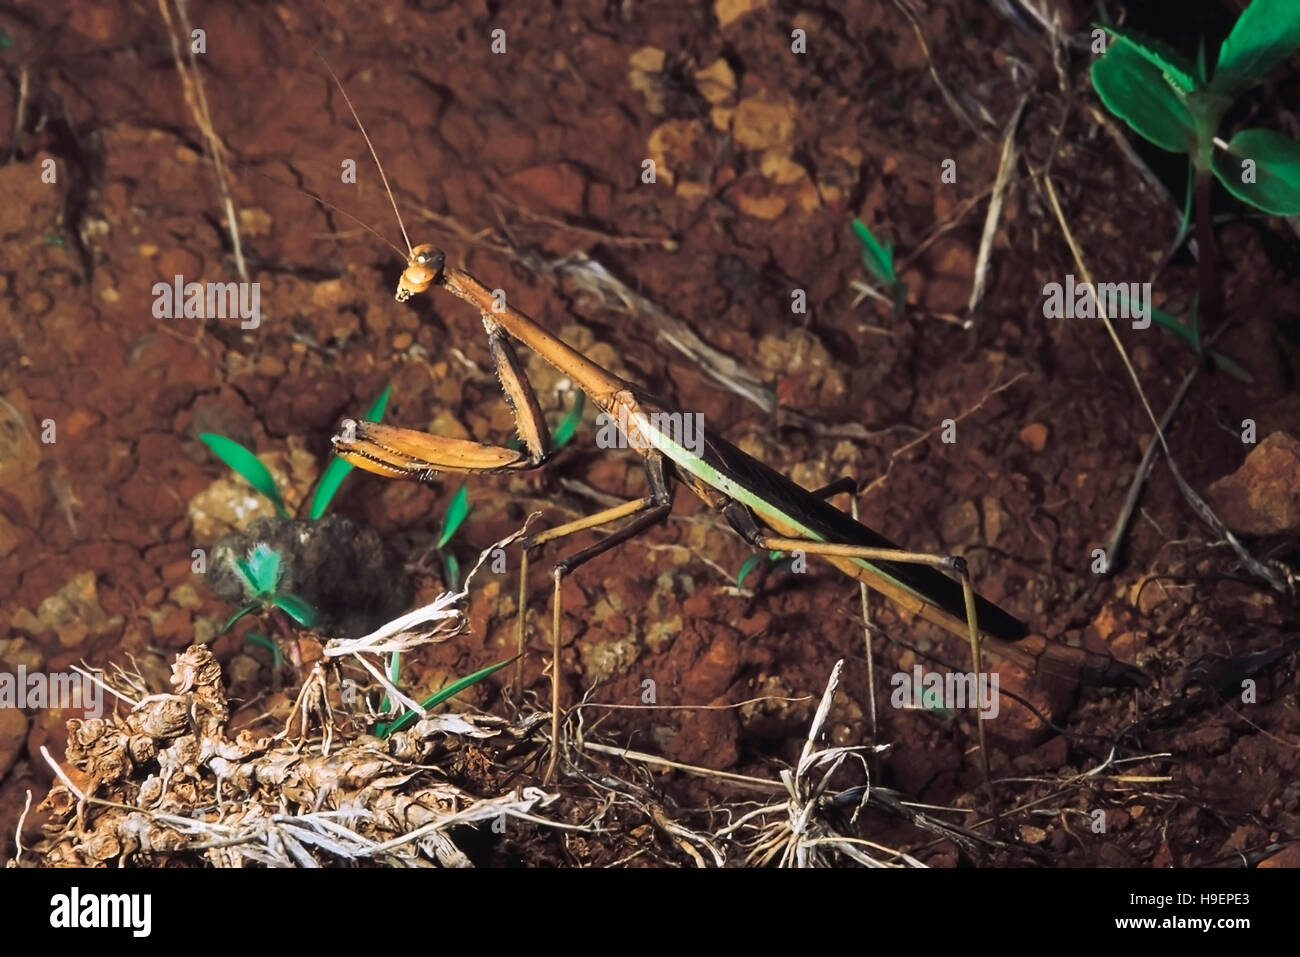 Le Mantis imitant herbes brûlées. Priant mantids présentent une ressemblance remarquable à leur environnement. Rajgad, Maharashtra, Inde. Banque D'Images